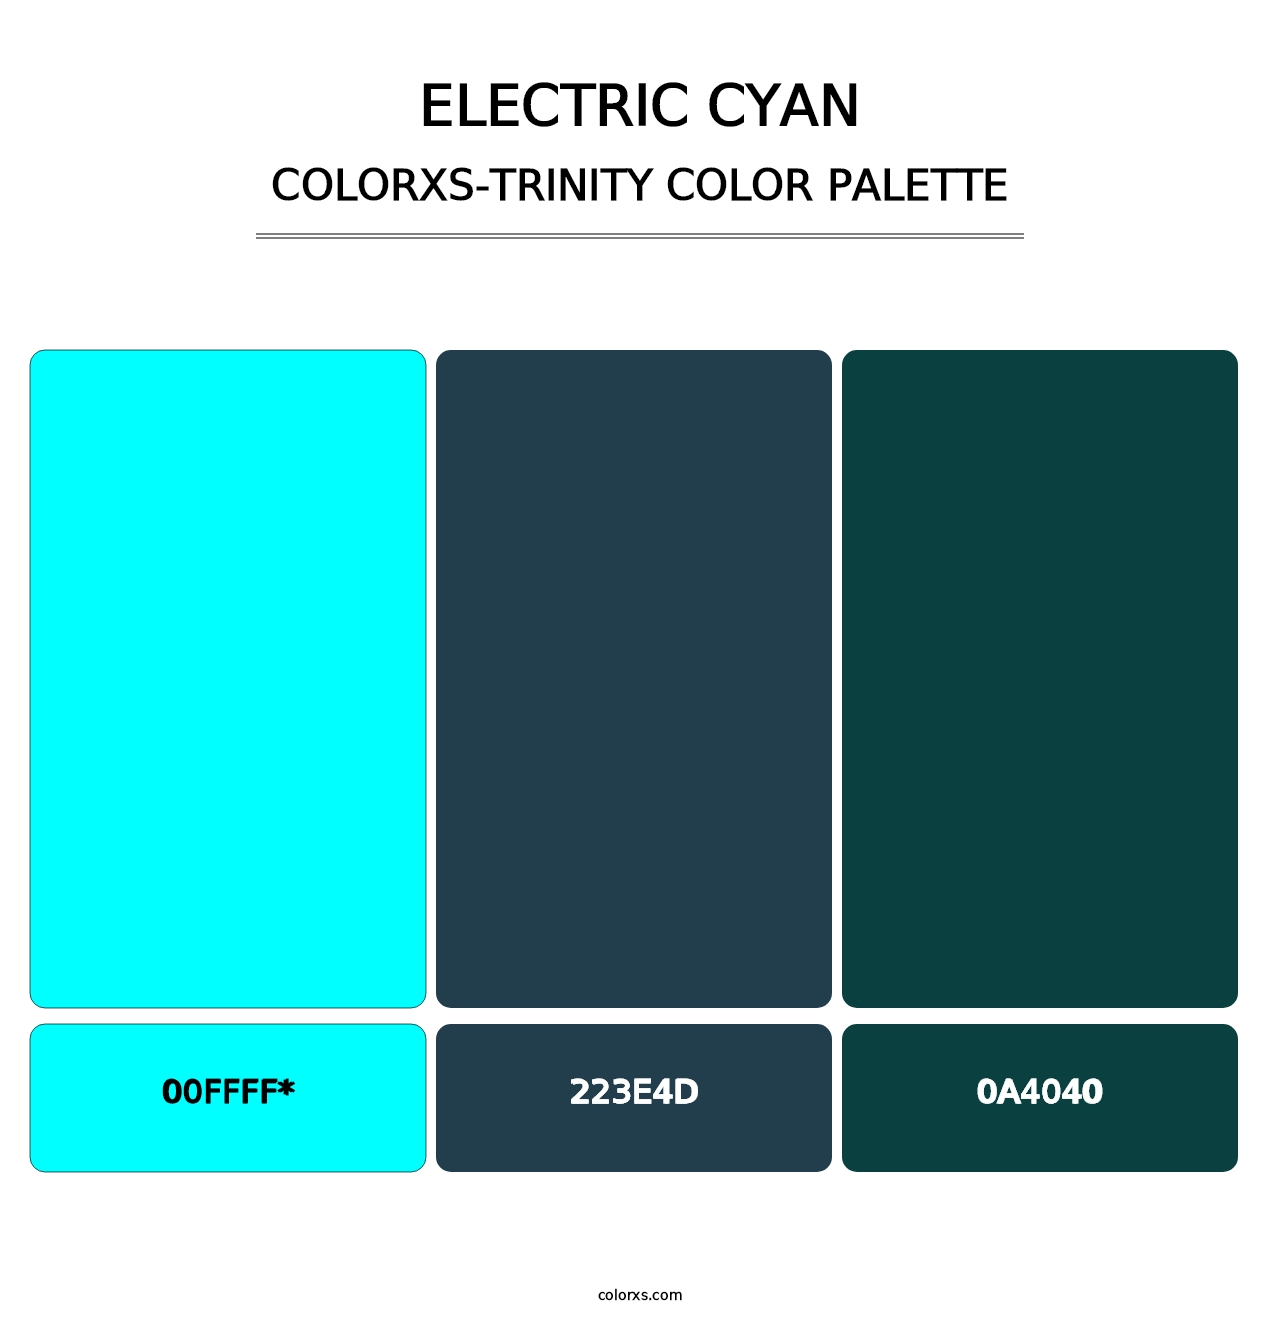 Electric Cyan - Colorxs Trinity Palette